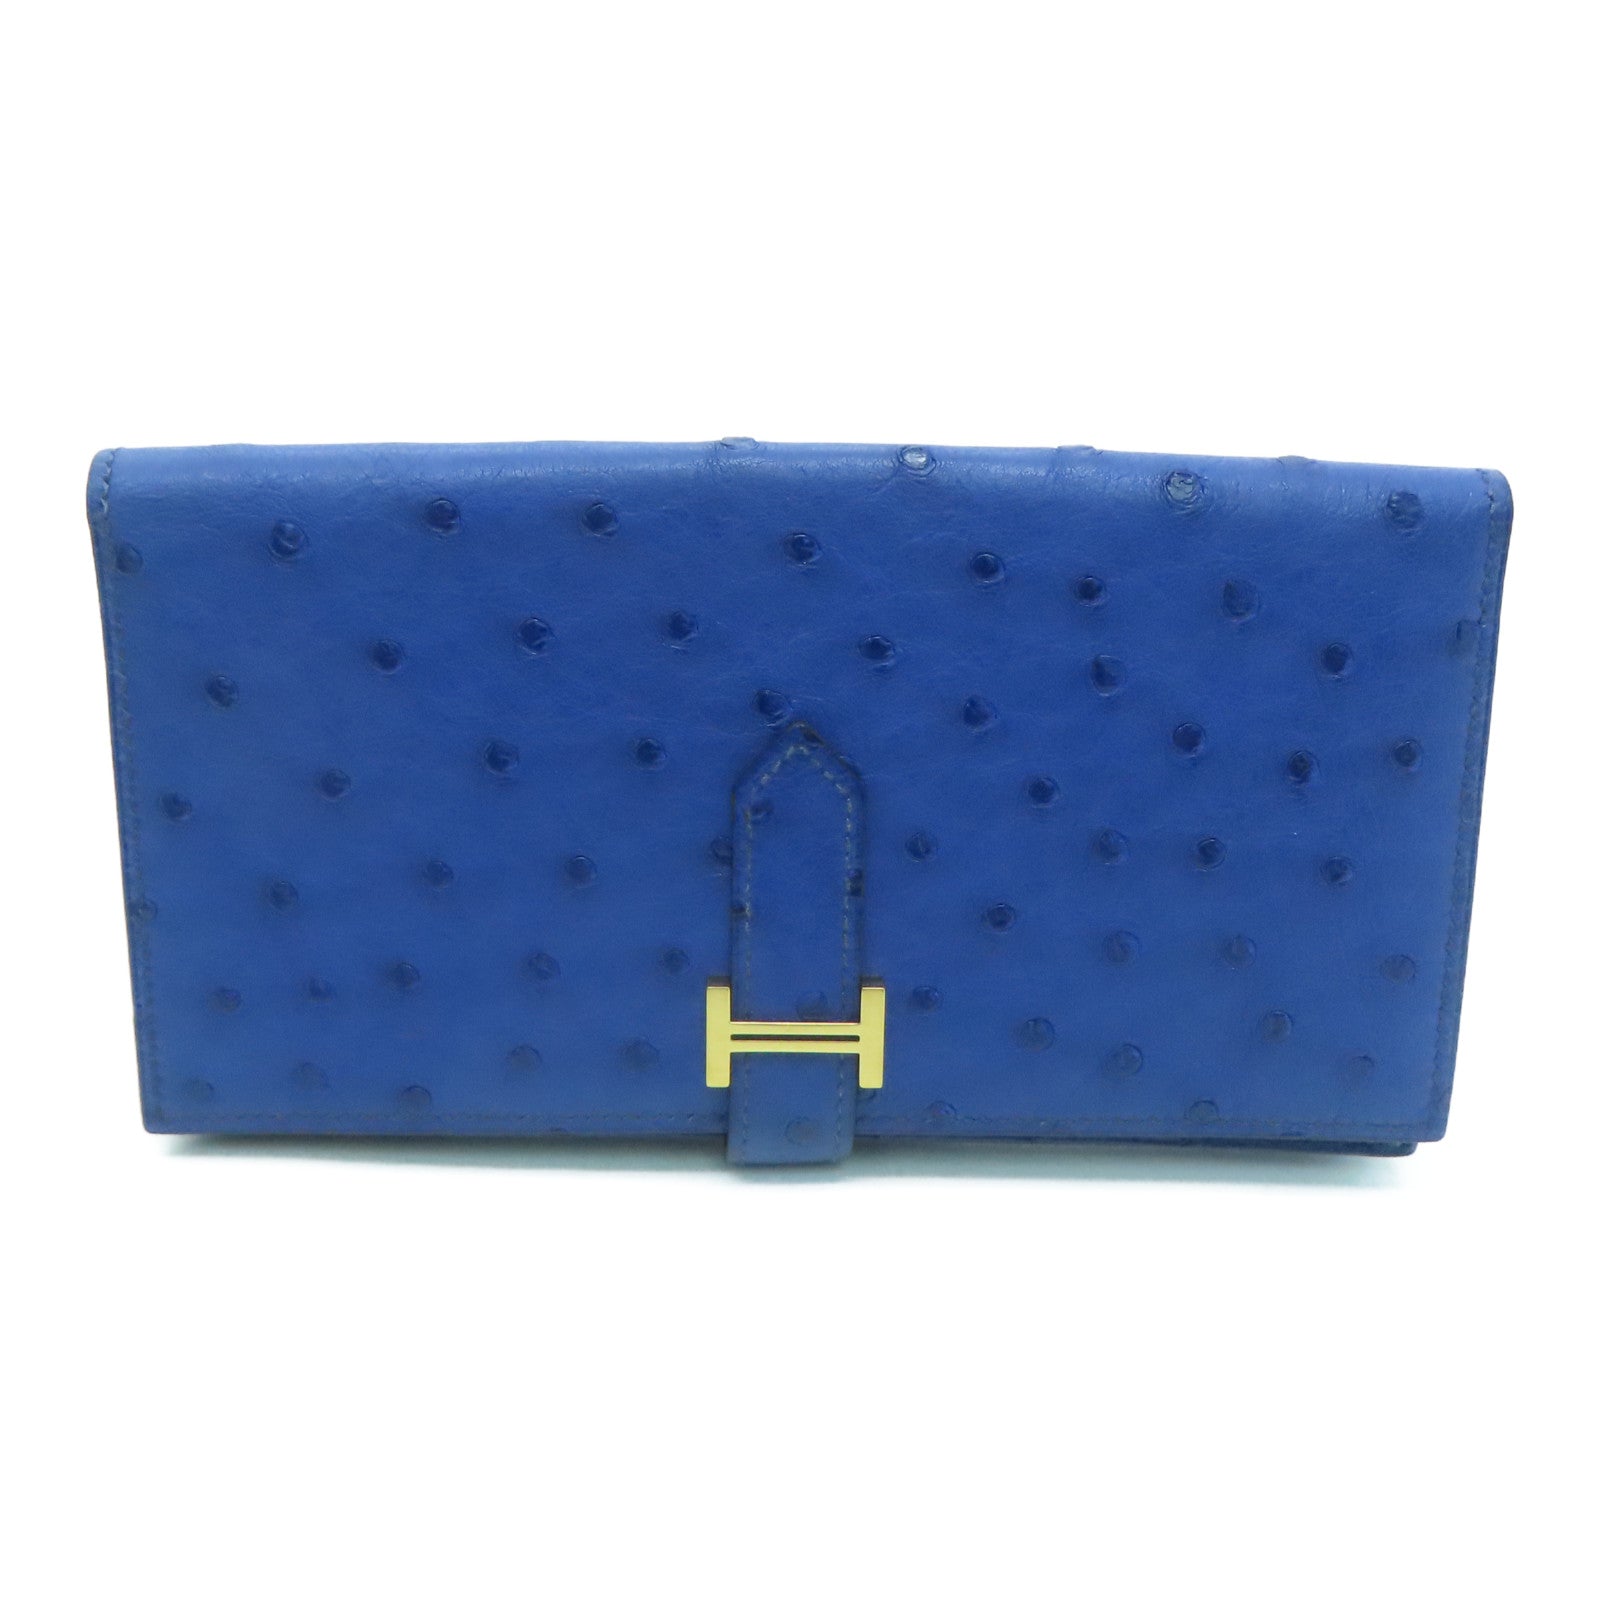 Luxe Maison - Bnib Hermes Compact Wallet bleuet ostrich